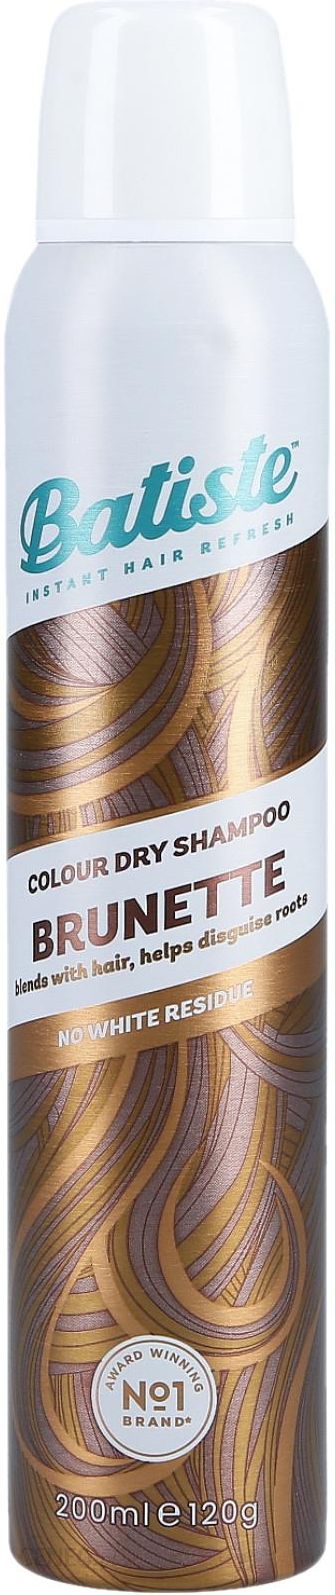 suchy szampon batiste brunette